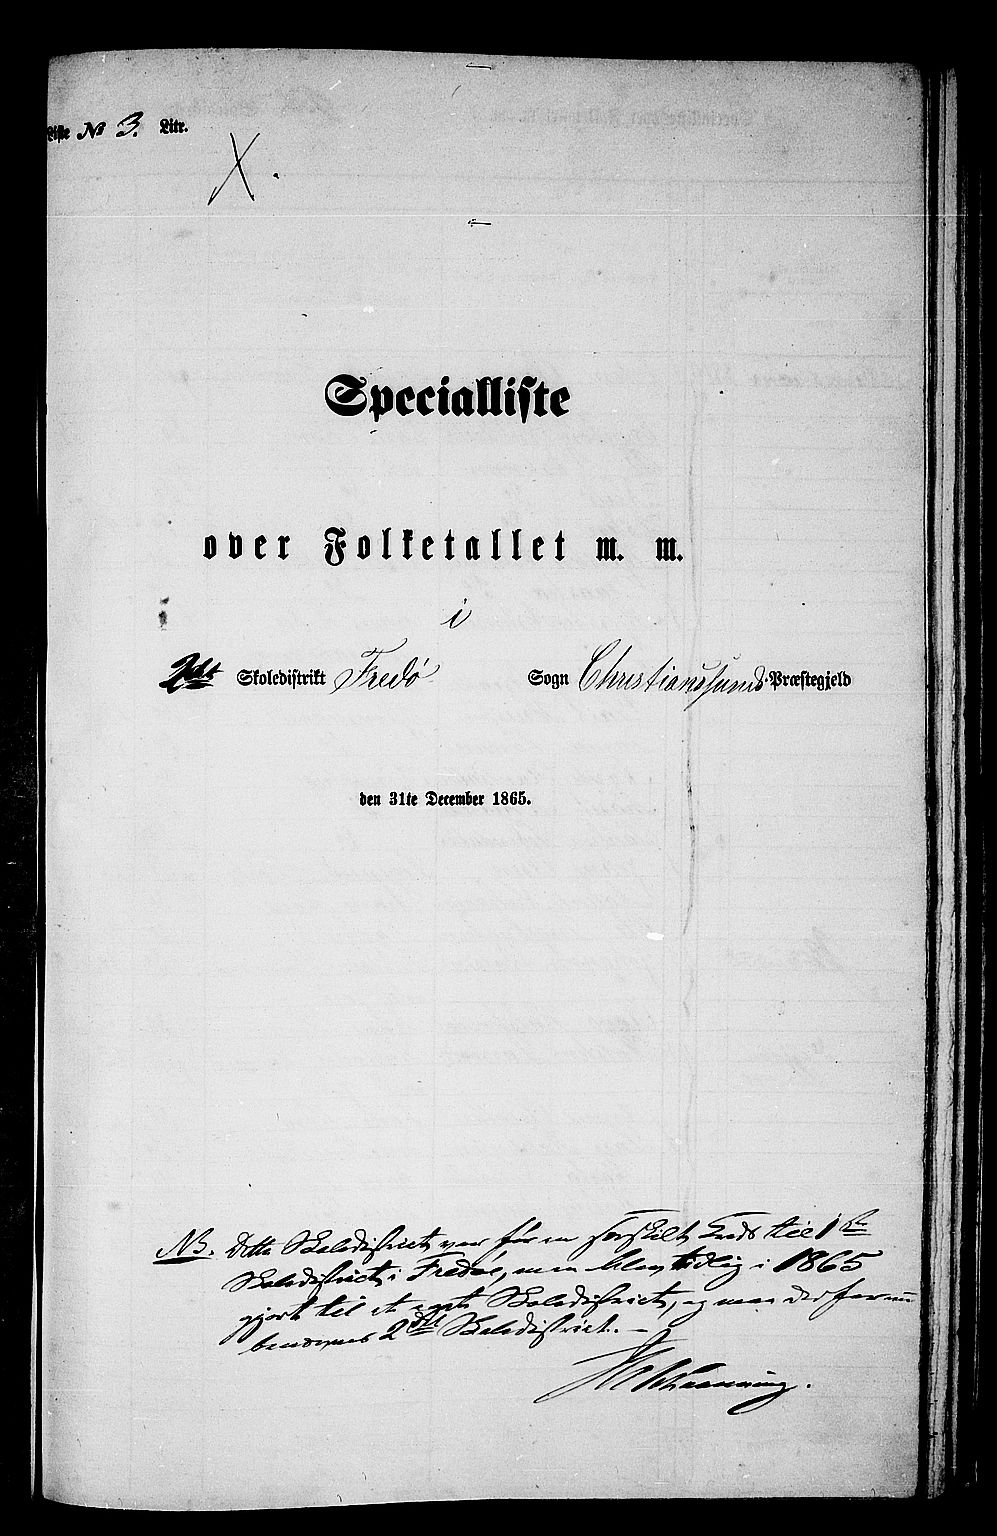 RA, Folketelling 1865 for 1556L Kristiansund prestegjeld, Frei sokn og Grip sokn, 1865, s. 26